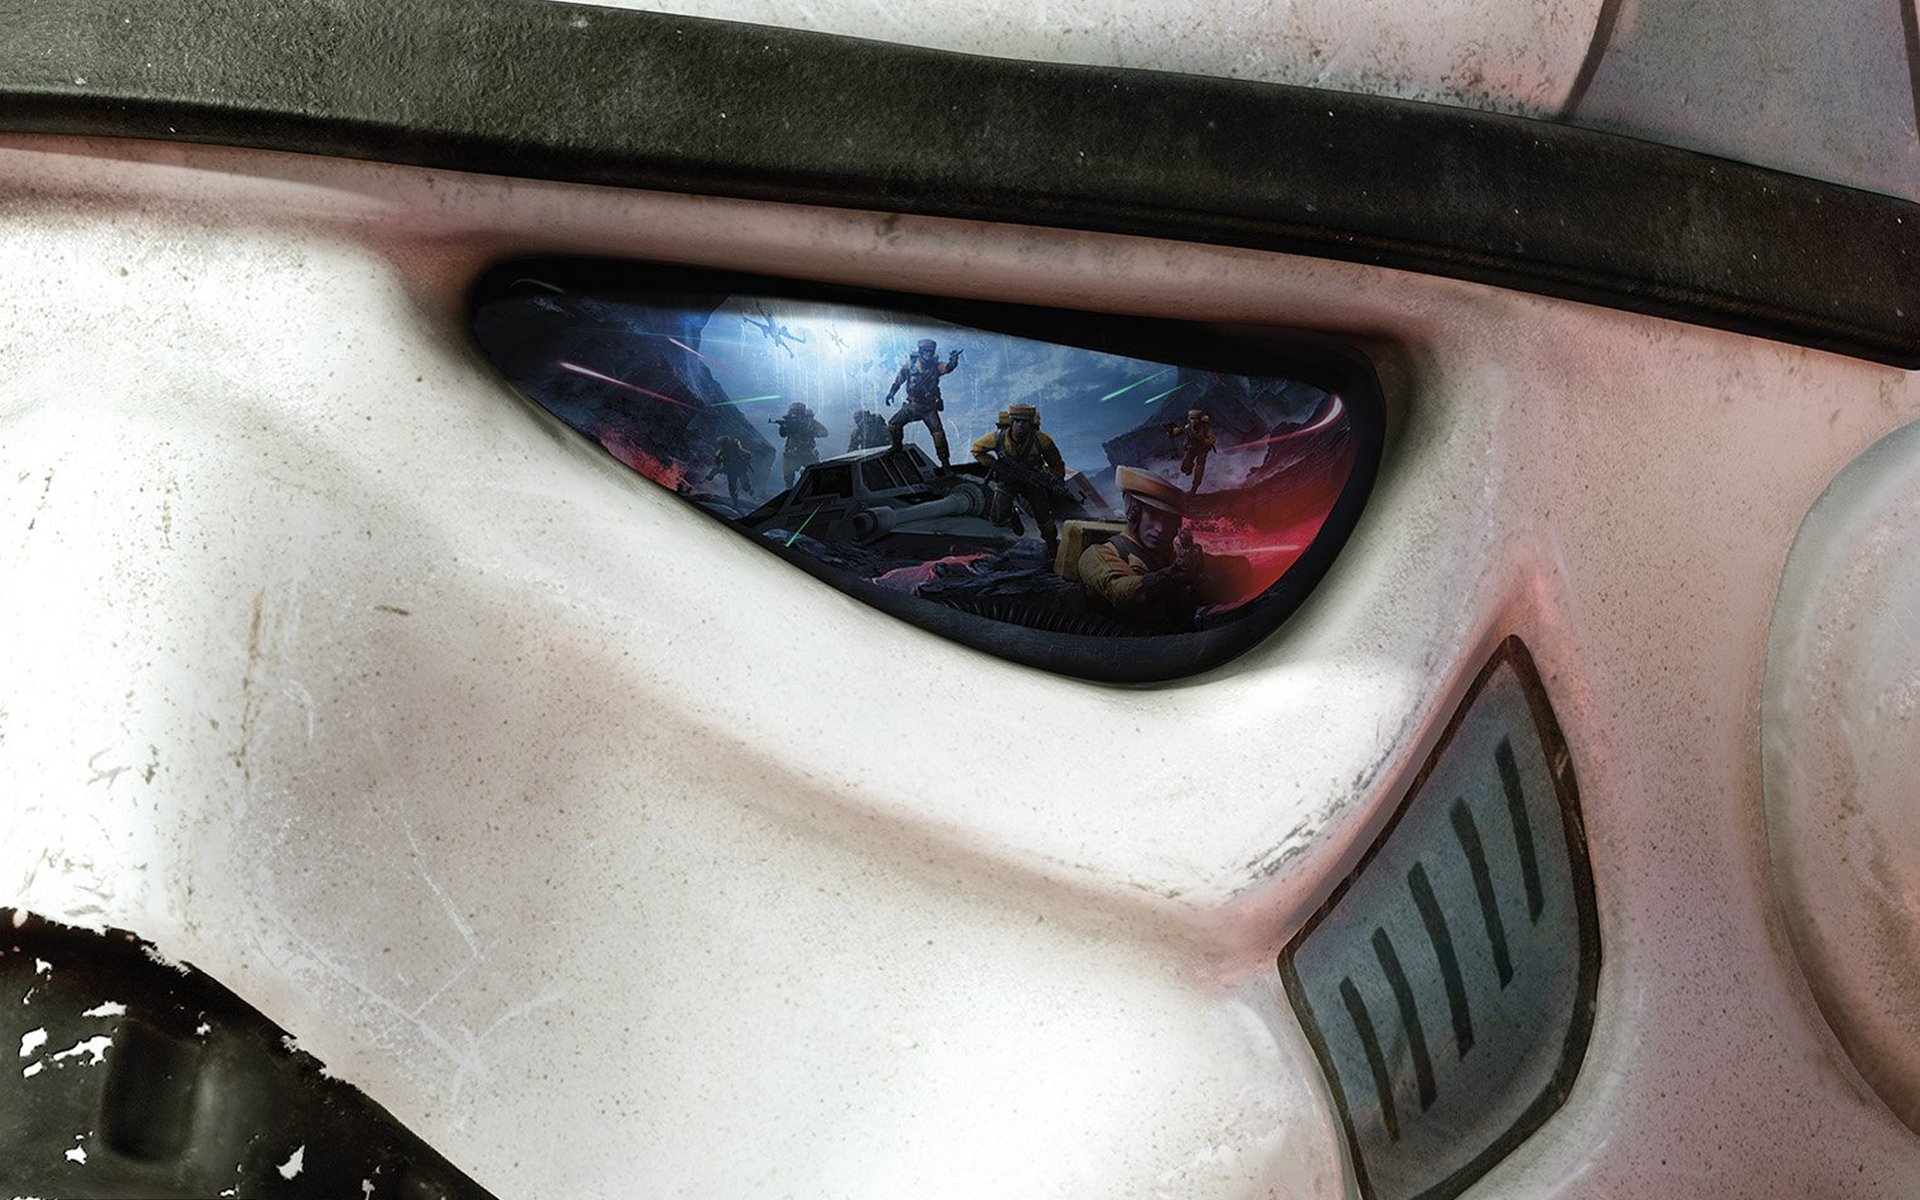 Star Wars Battlefront 2015 Hd Wallpaper Background Image